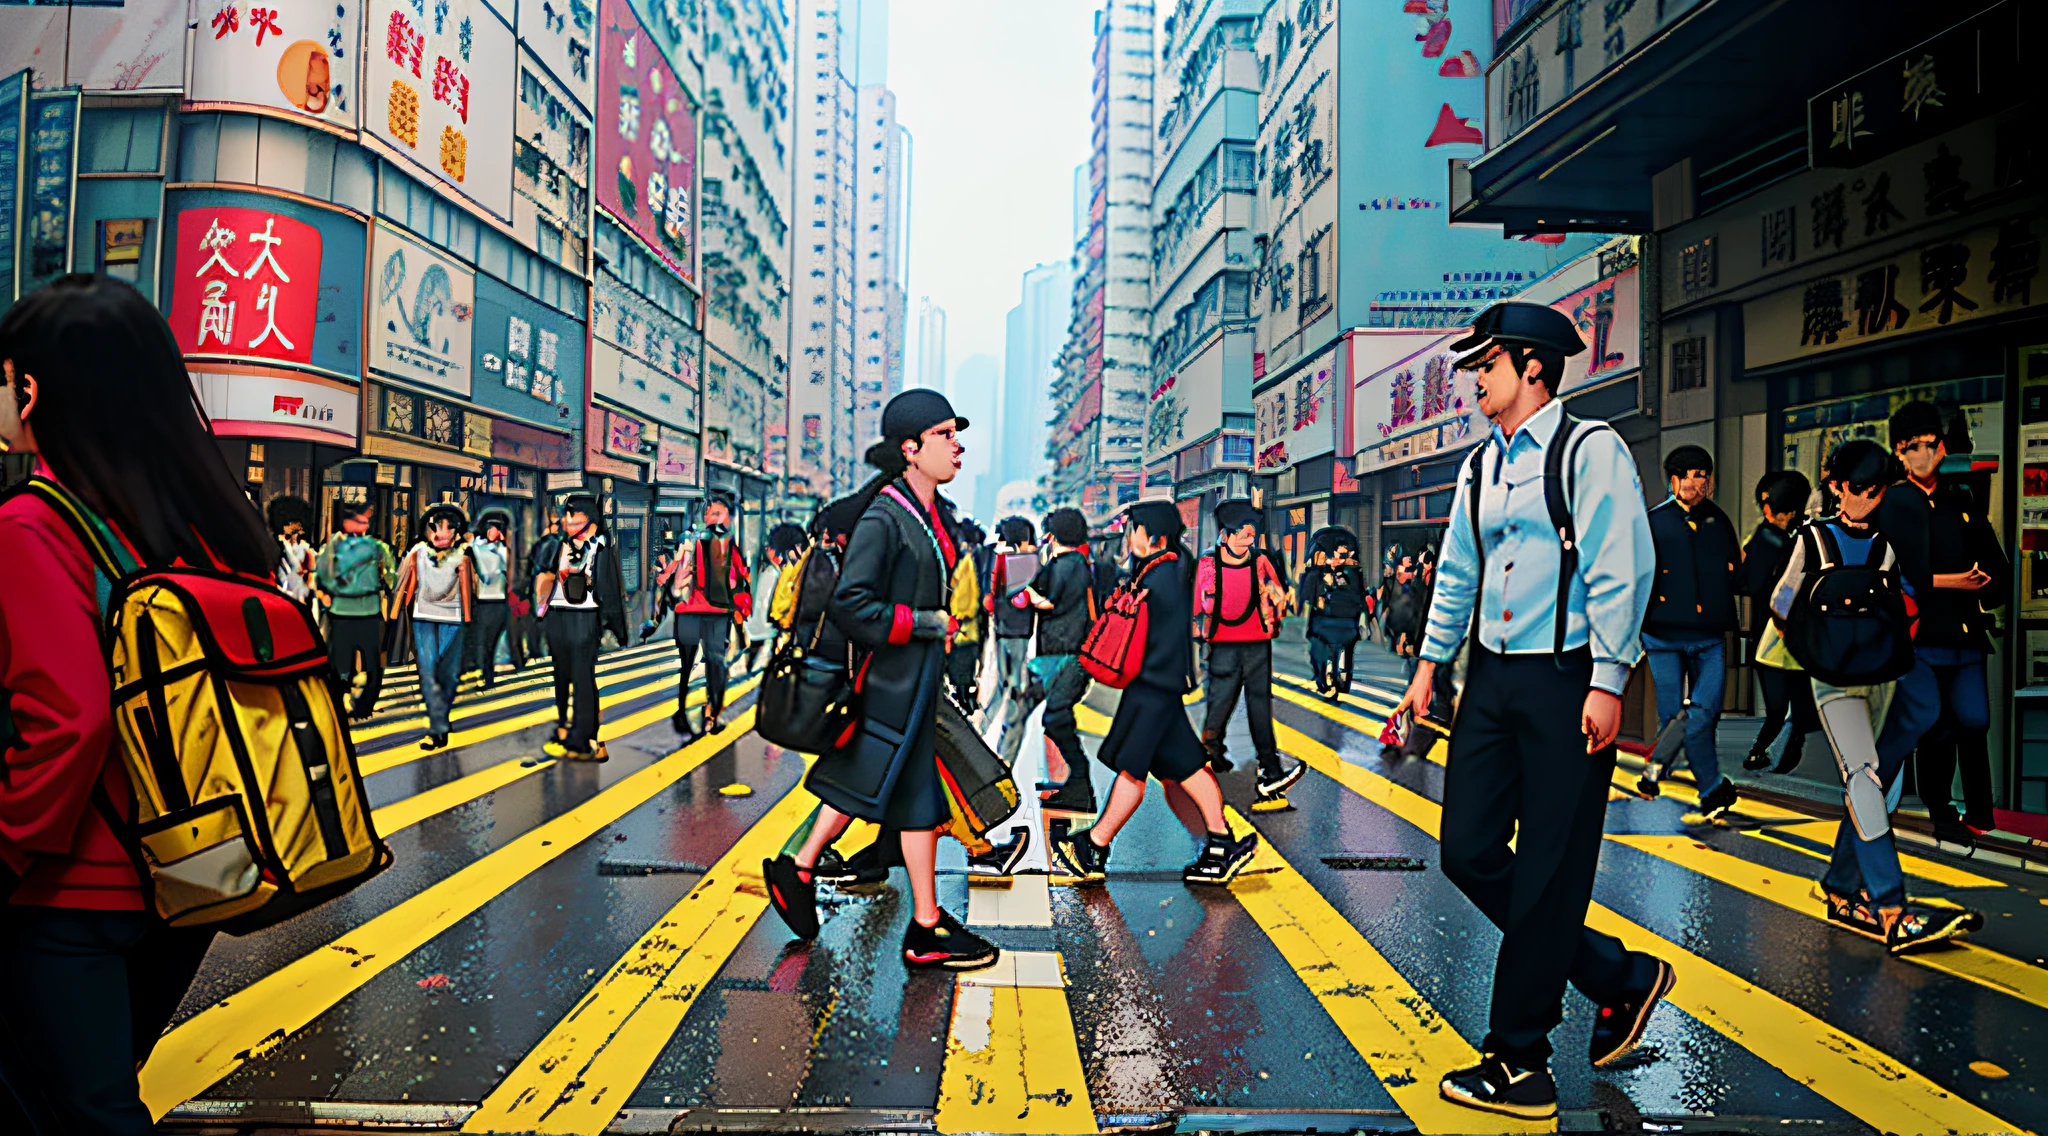 人们在繁忙的城市街道上穿过人行横道, 人們走在街上, 香港的街道, 人们走在街上, 繁忙的街s, 人们走在街上, 走在街上的旅客, 繁忙的街s filled with people, 香港的街道, 繁忙的街, 擁擠的街道, 擁擠的街道s, 街上的人們, 人們走來走去, 街上的人們